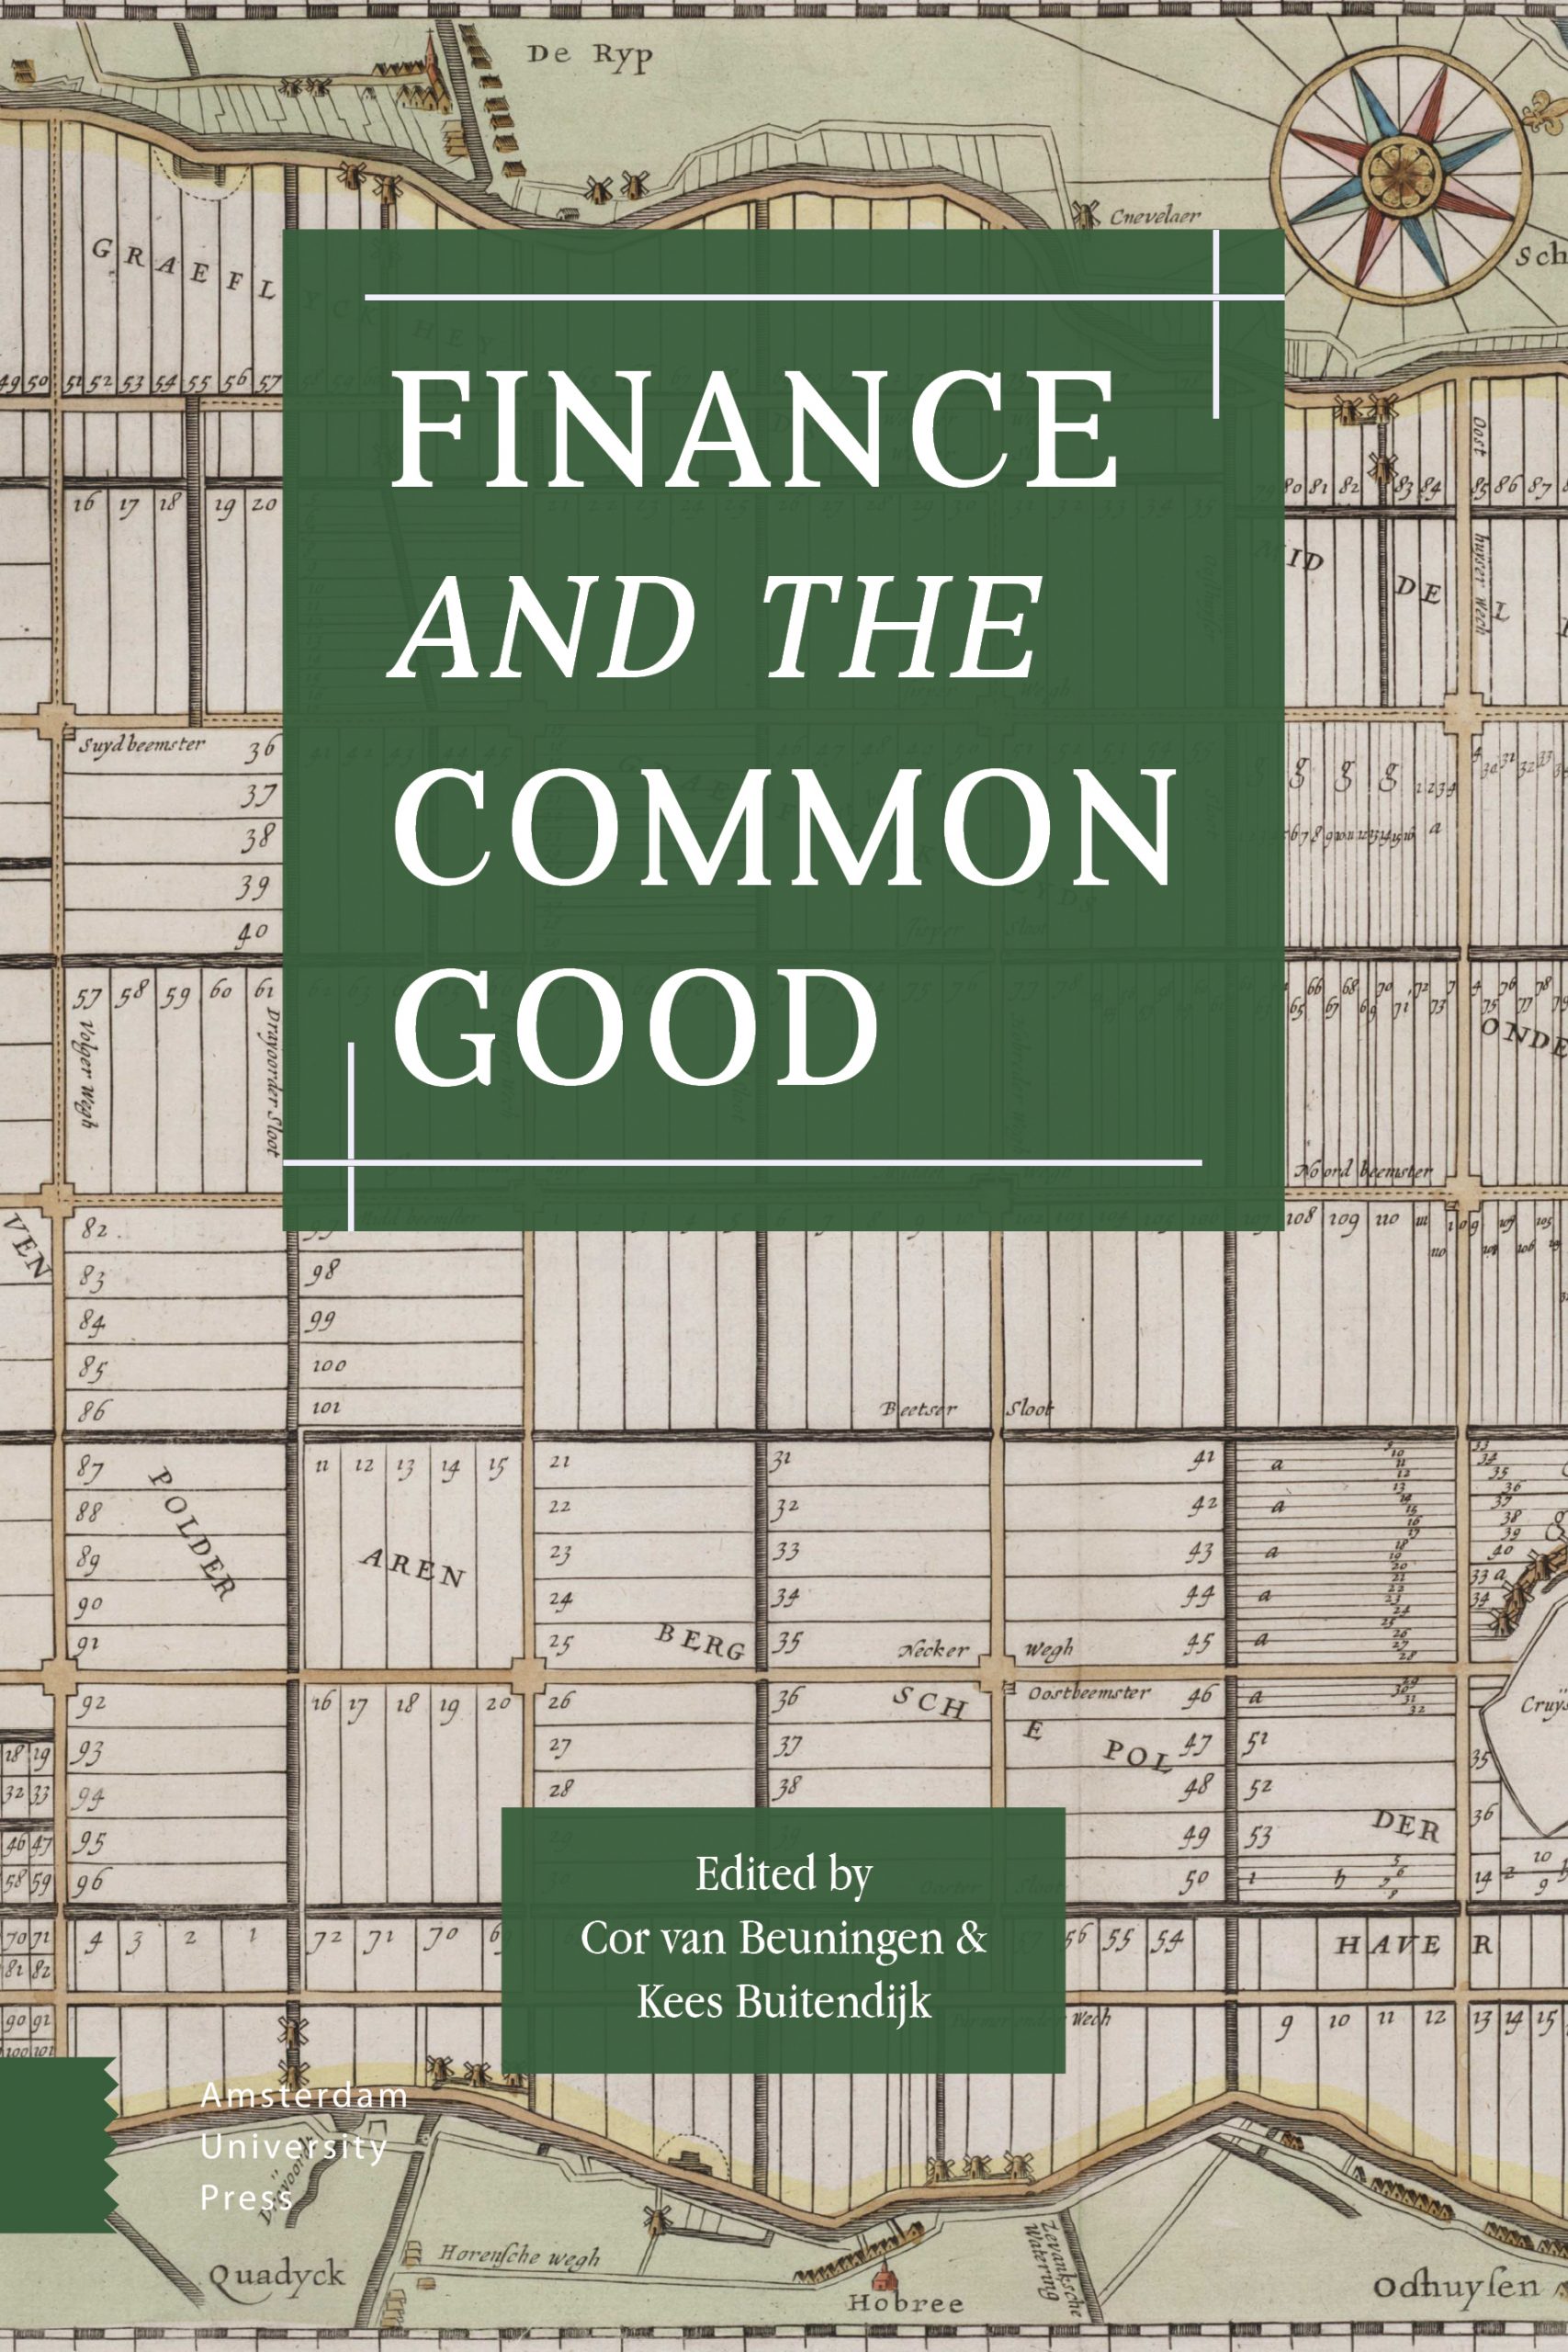 Book – Cor van Beuningen & Kees Buitendijk – Finance and the Common Good